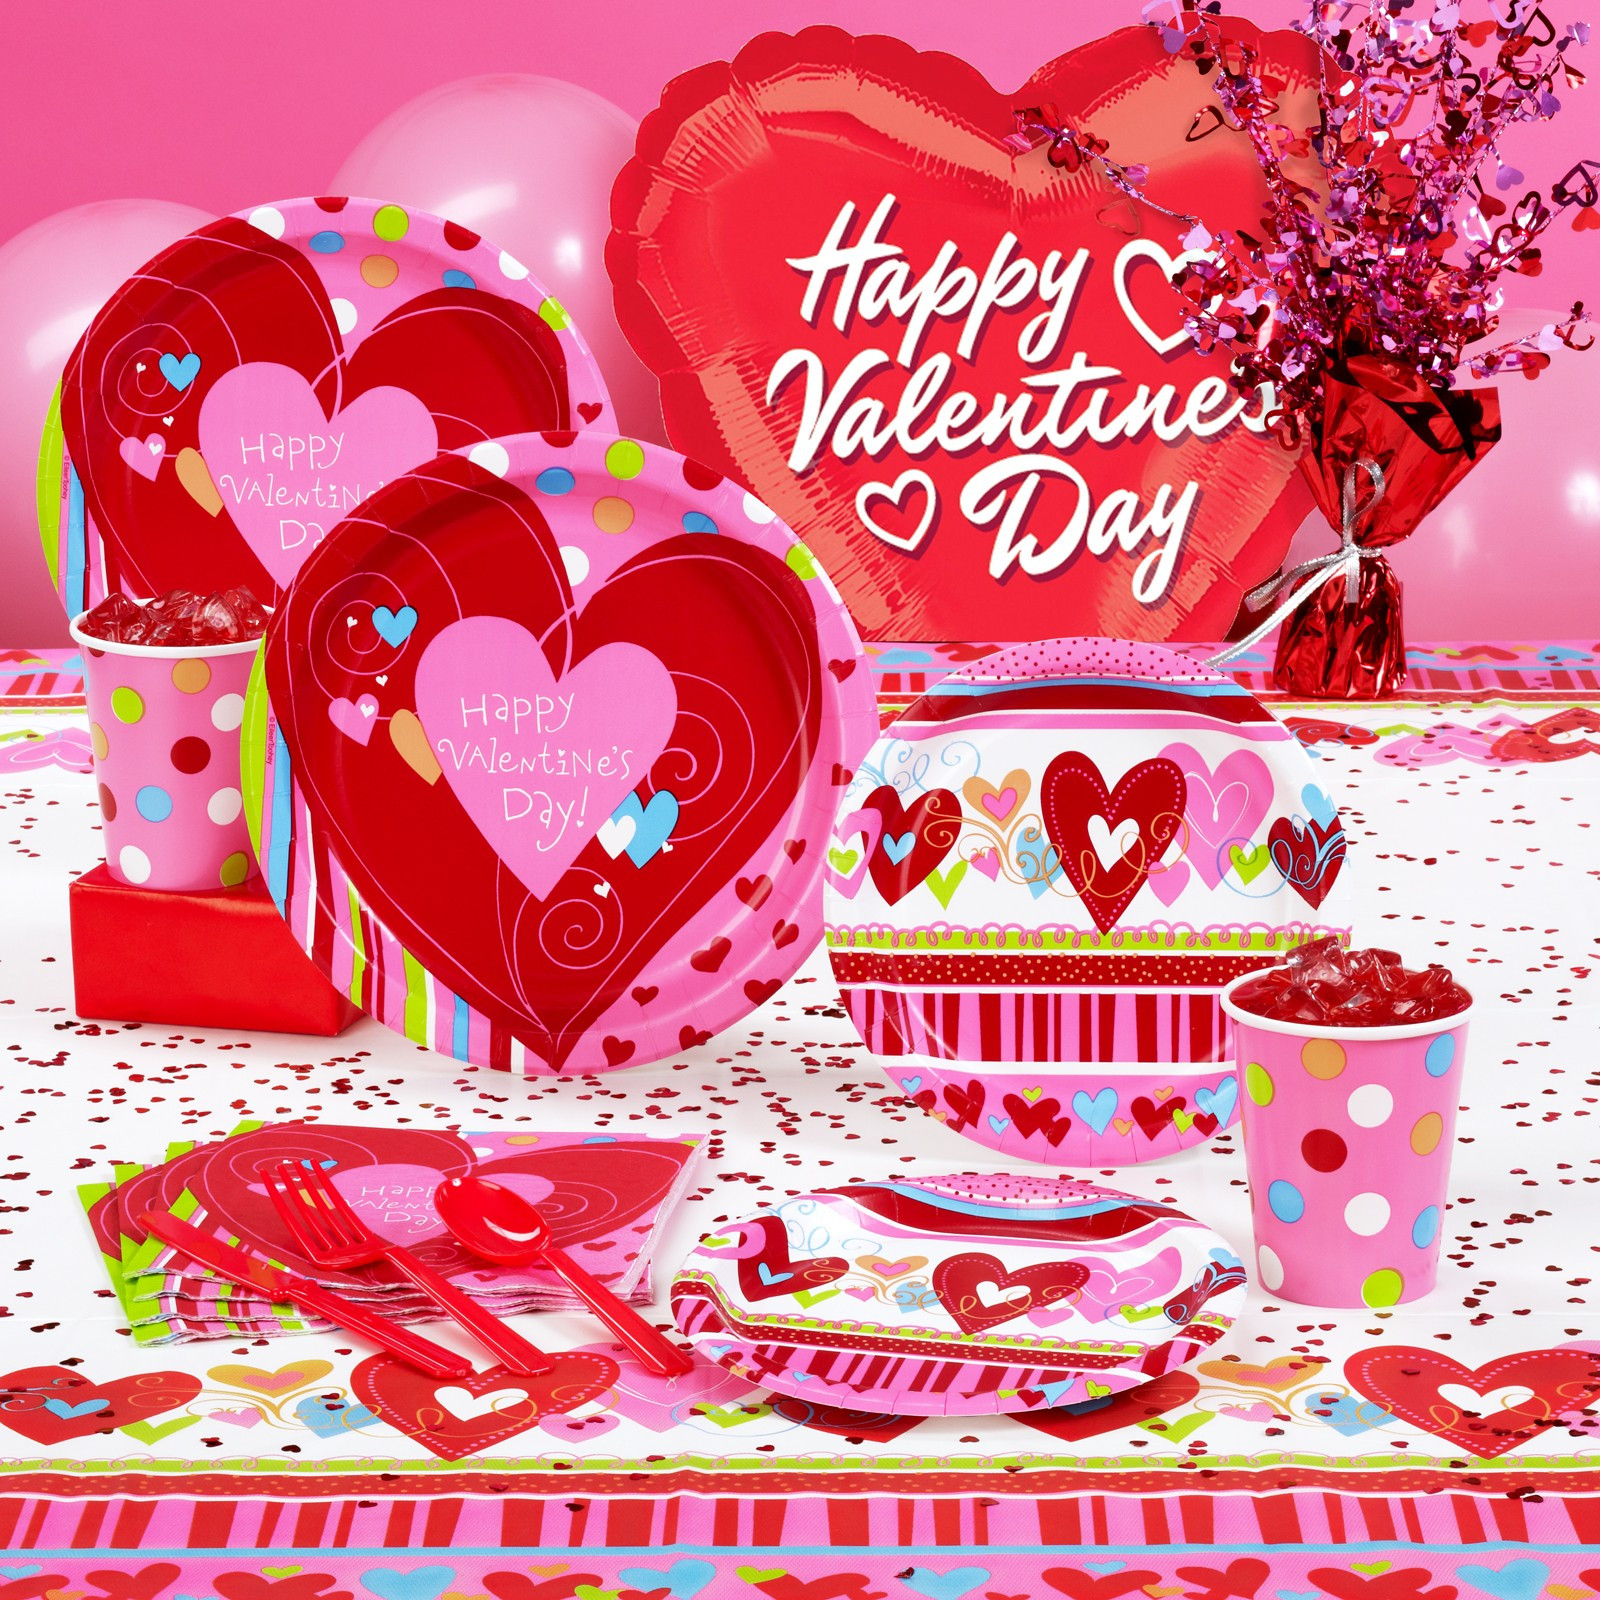 Valentine Birthday Party Ideas
 Best Valentines Day Party Ideas 2015